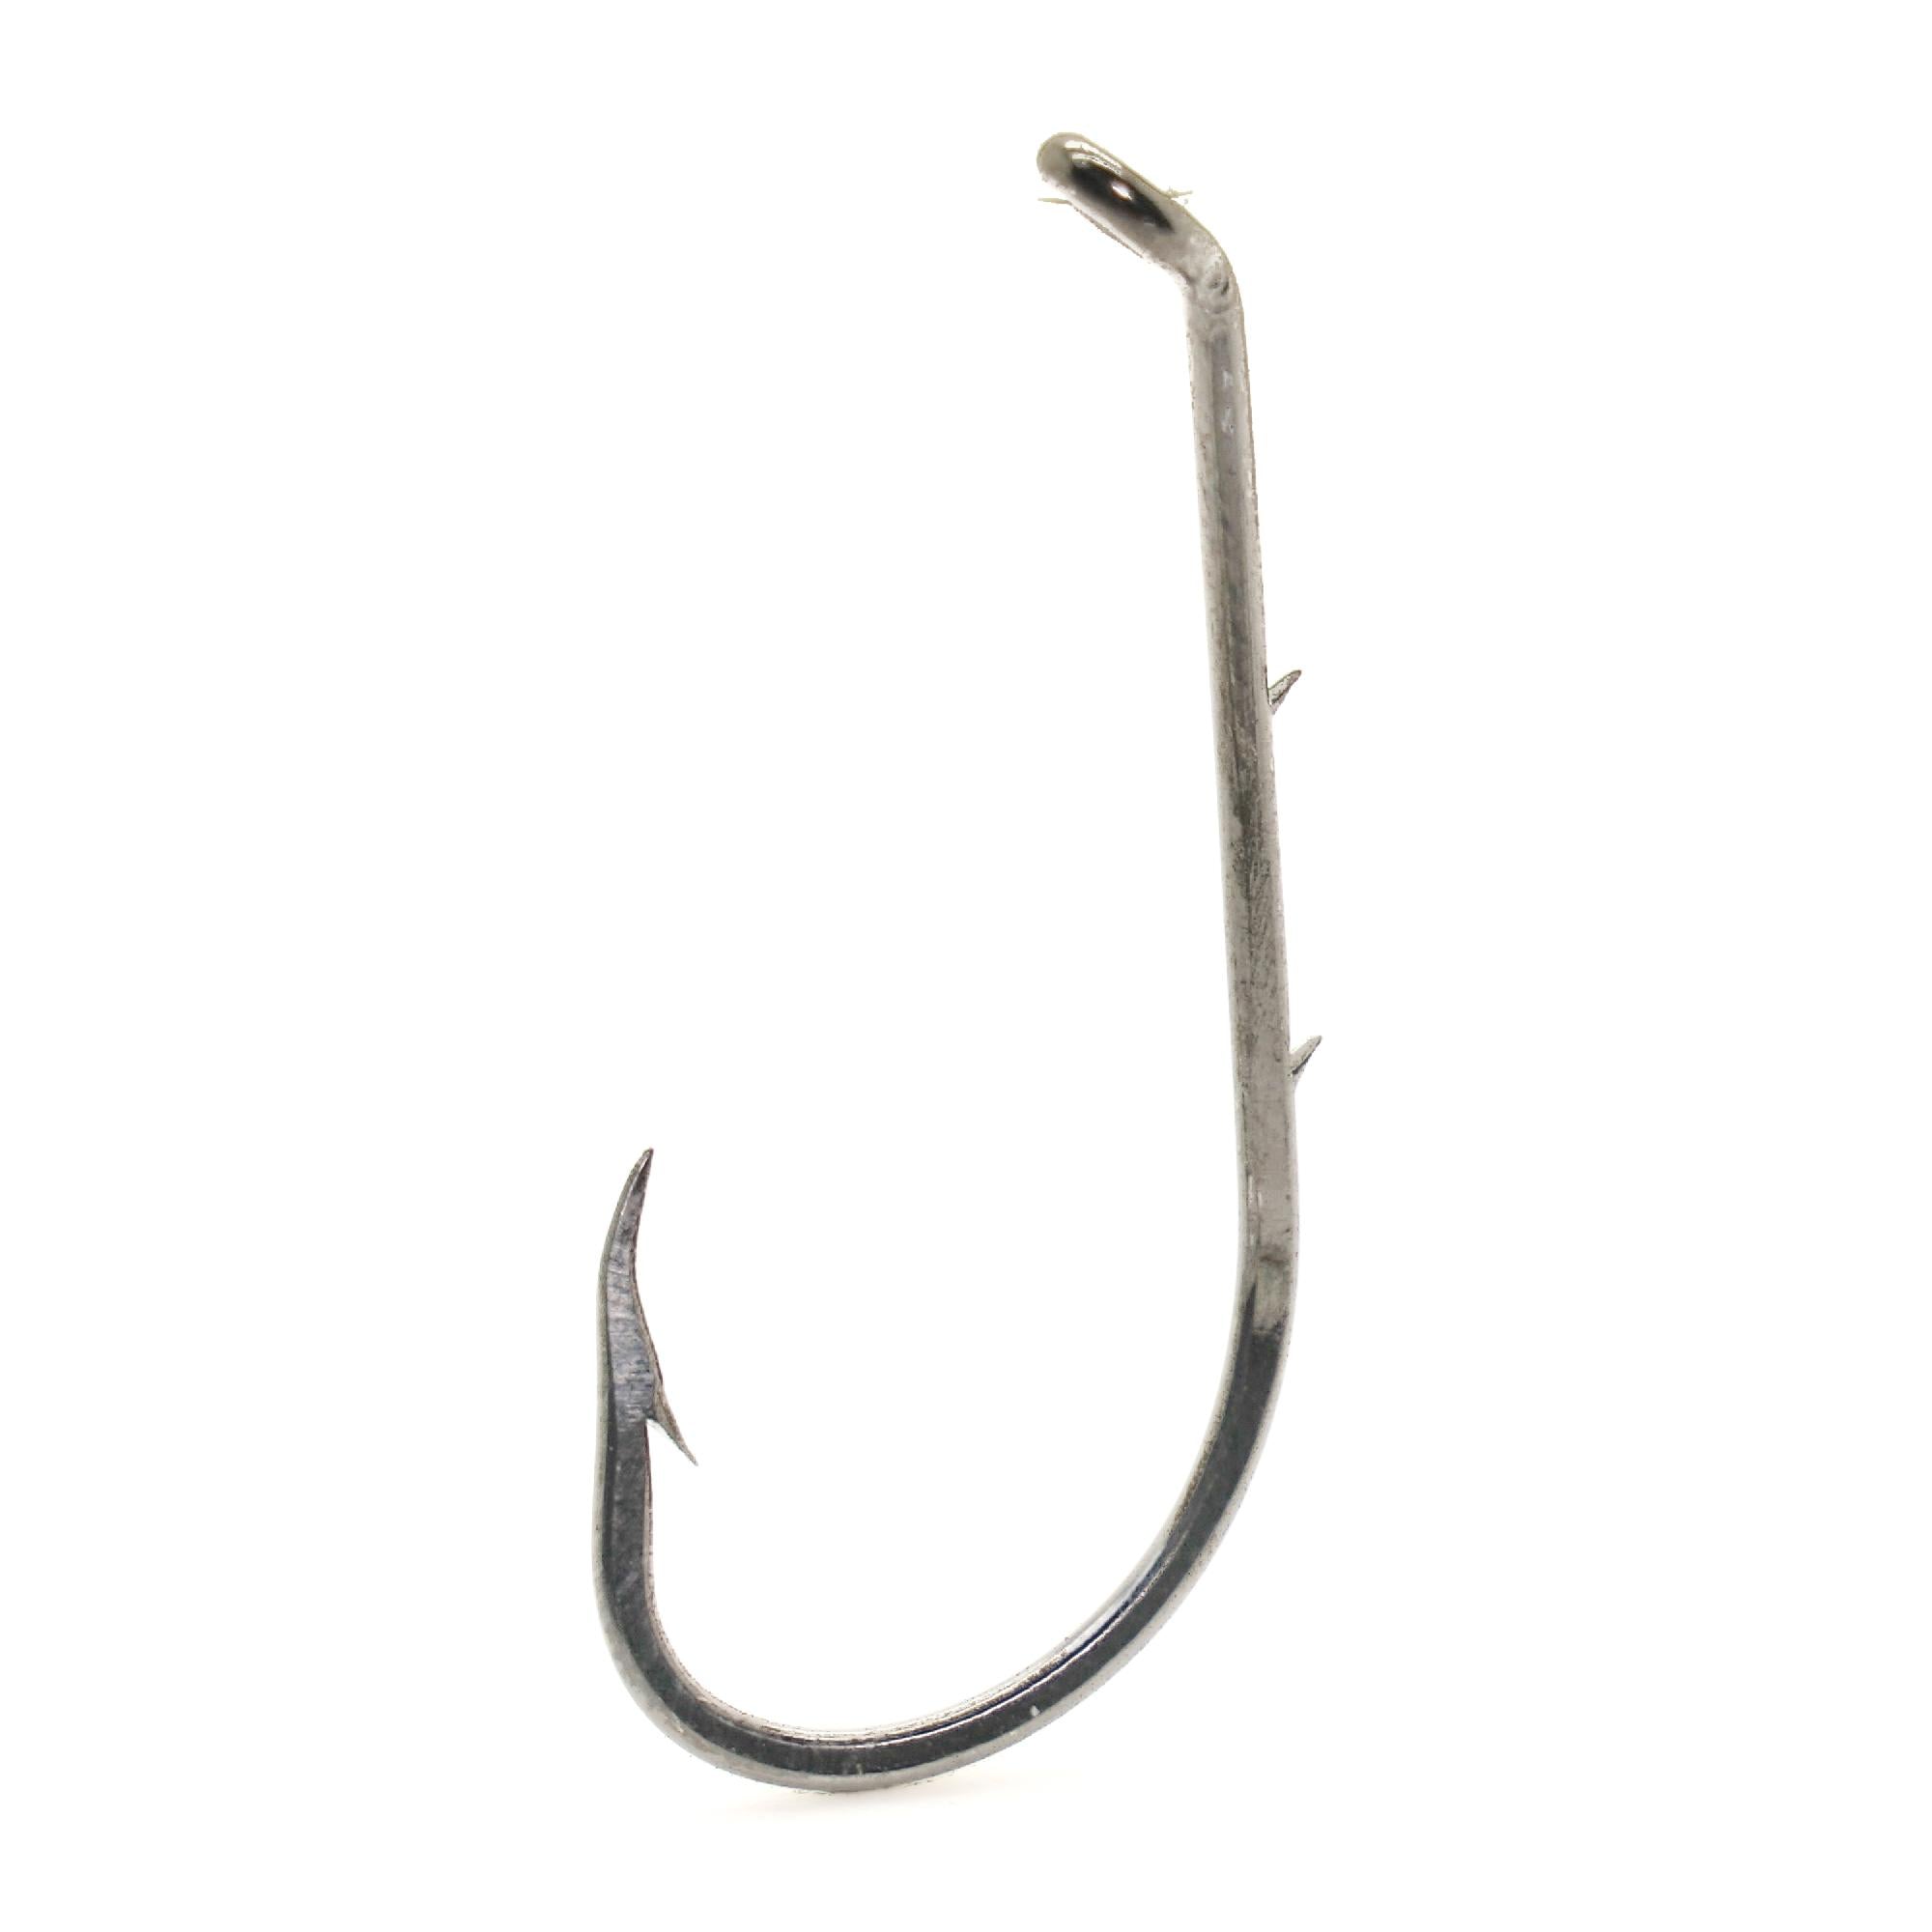 SILANON Baitholder Fishing Hooks,120pcs Barbed Long Shank Beak Baitholder Hooks Size 4-6/0 Carbon Steel Offset Jig Fish Hooks 2 Barbs for Saltwater